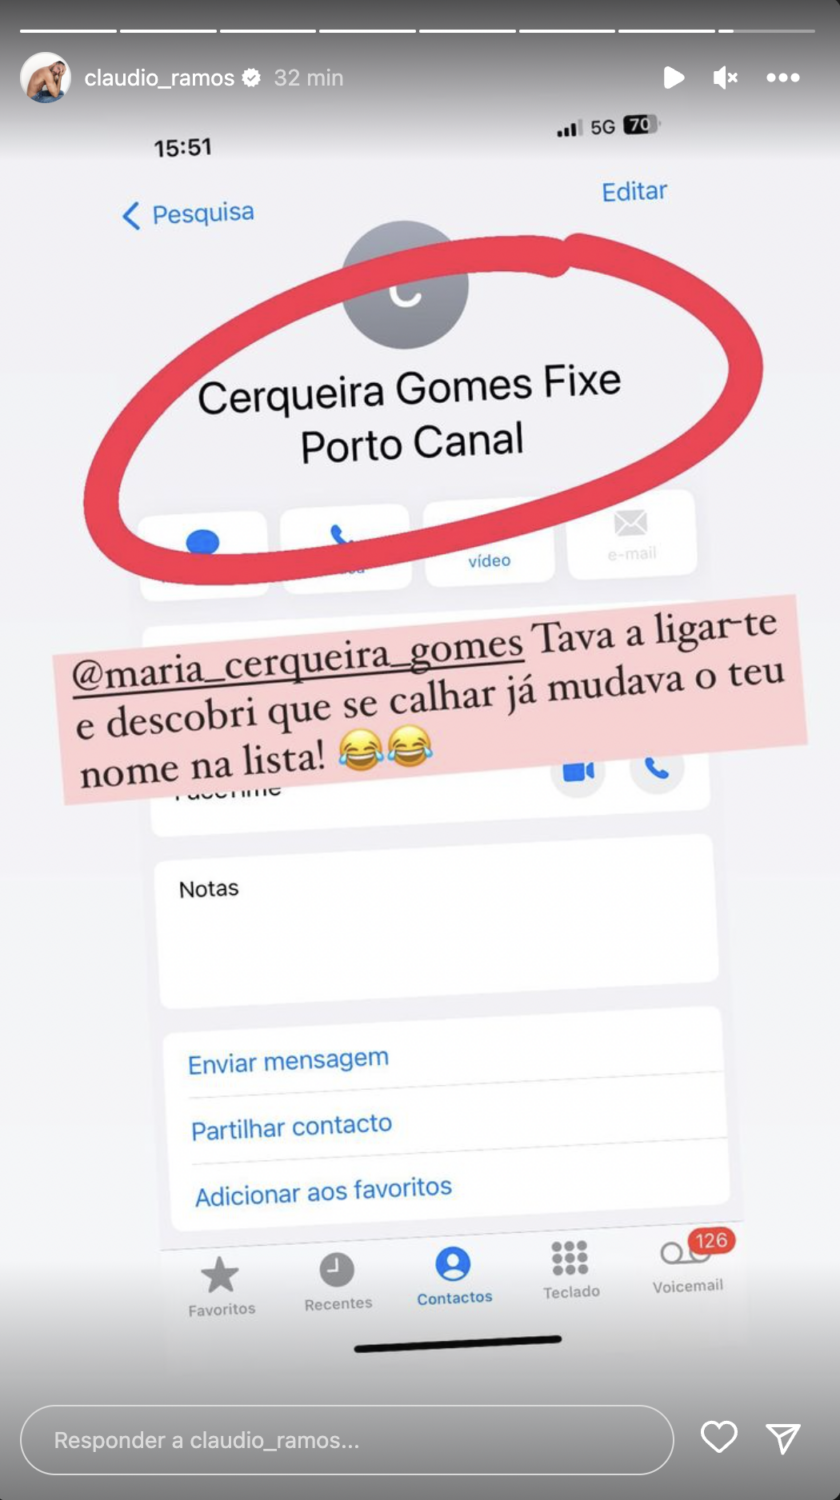 Cláudio Ramos revela nome &#8216;peculiar&#8217; de Maria Cerqueira Gomes no seu telemóvel: &#8220;Se calhar já mudava&#8230;&#8221;